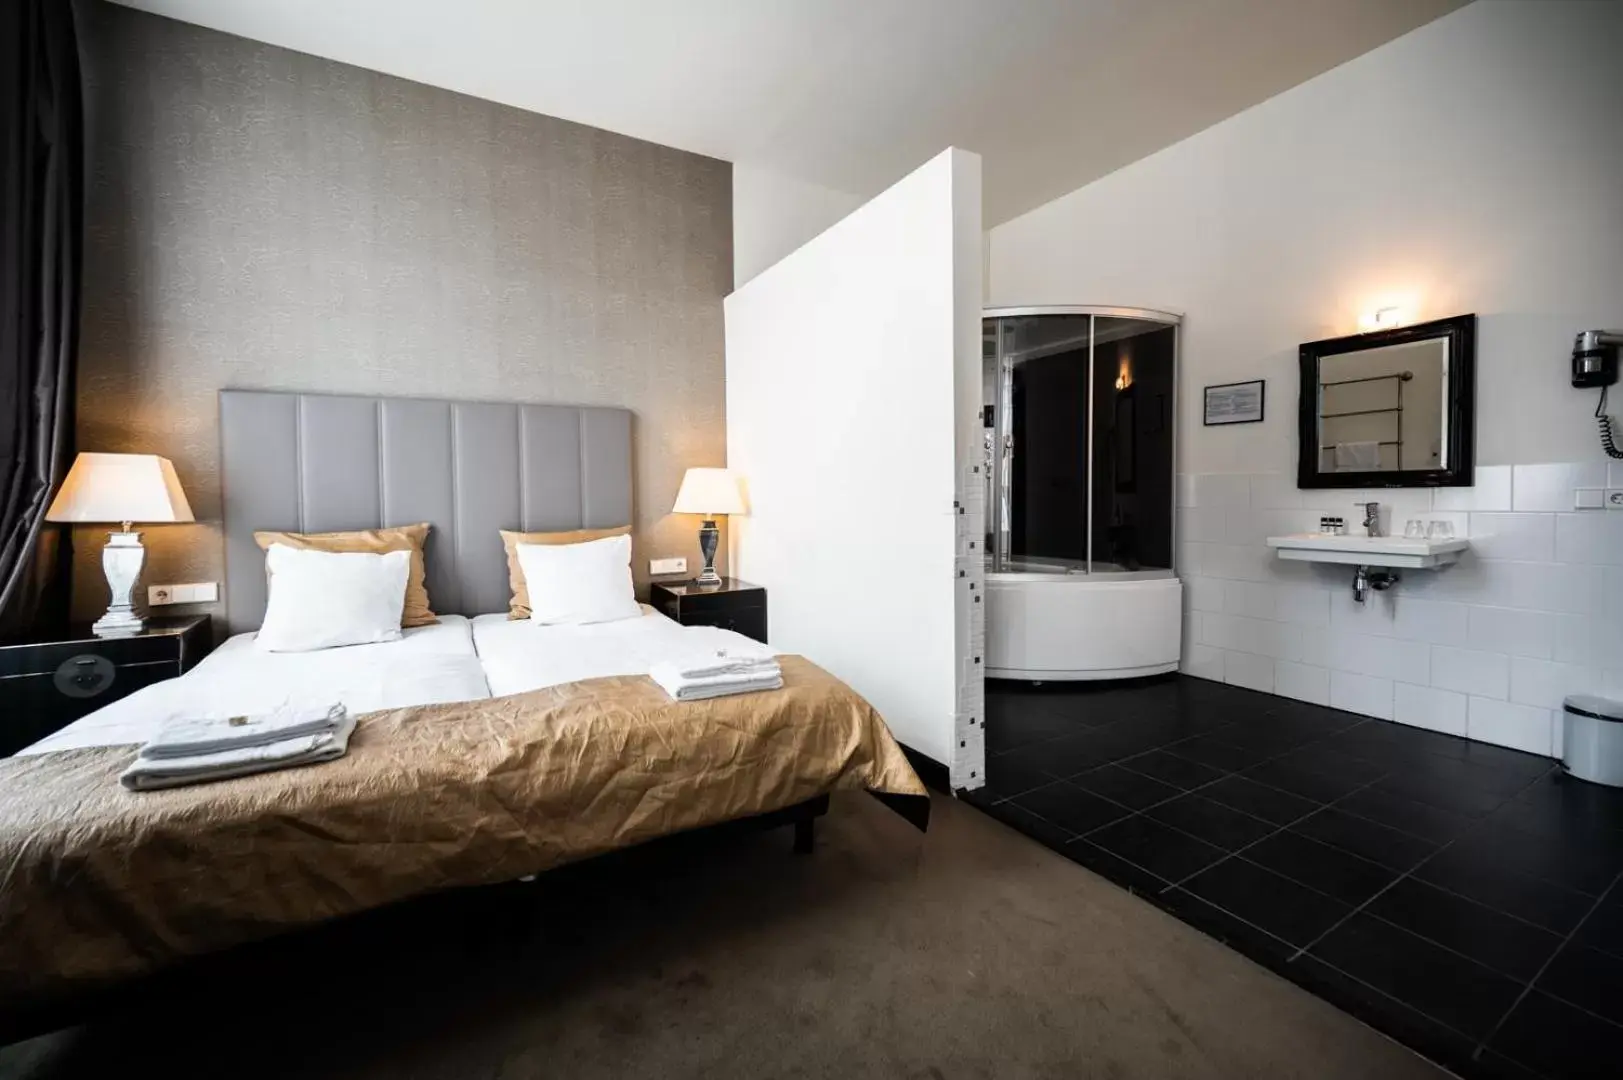 Bathroom, Bed in Grand Hotel Alkmaar